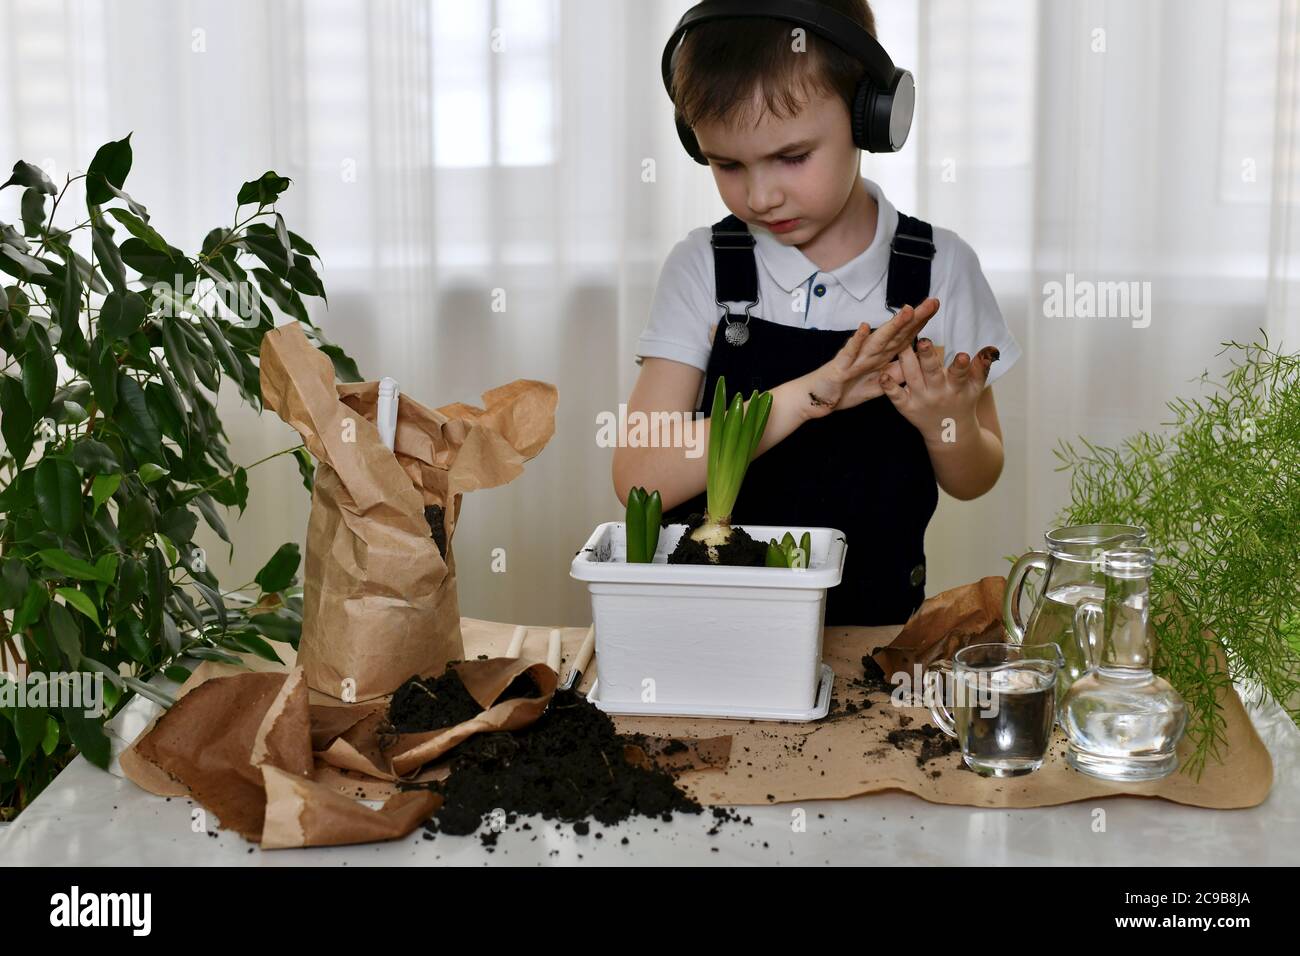 Der Junge schüttelt seine Handflächen vom Boden ab und schaut ernsthaft auf seine Arbeit, die gepflanzten Hyazinthen-Zwiebeln. Stockfoto